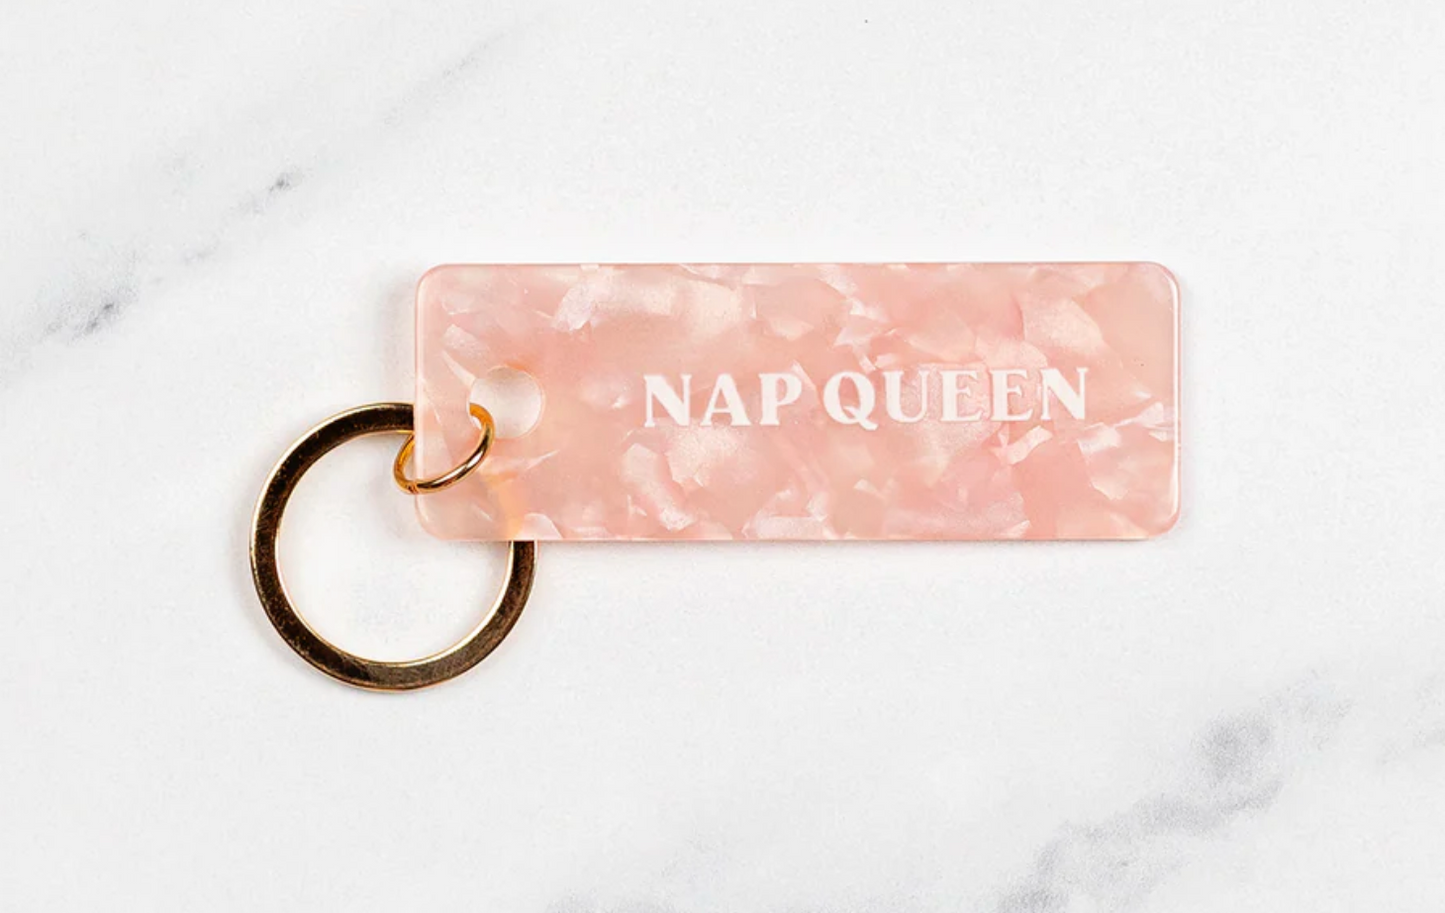 'Nap Queen' Keychain